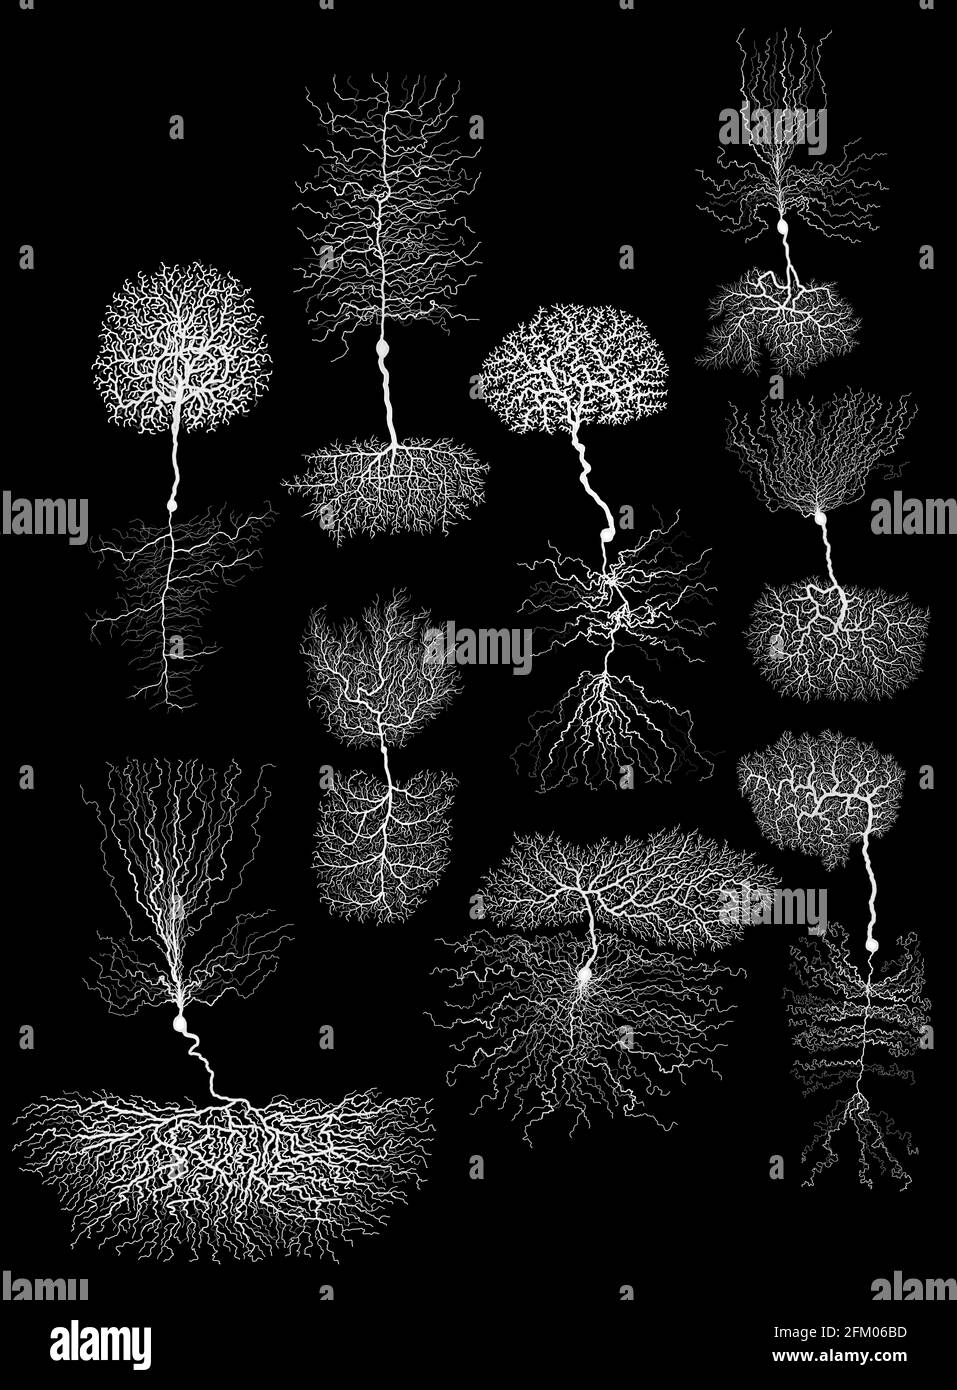 biologie du développement humain neurone avec cellule sur noir Banque D'Images